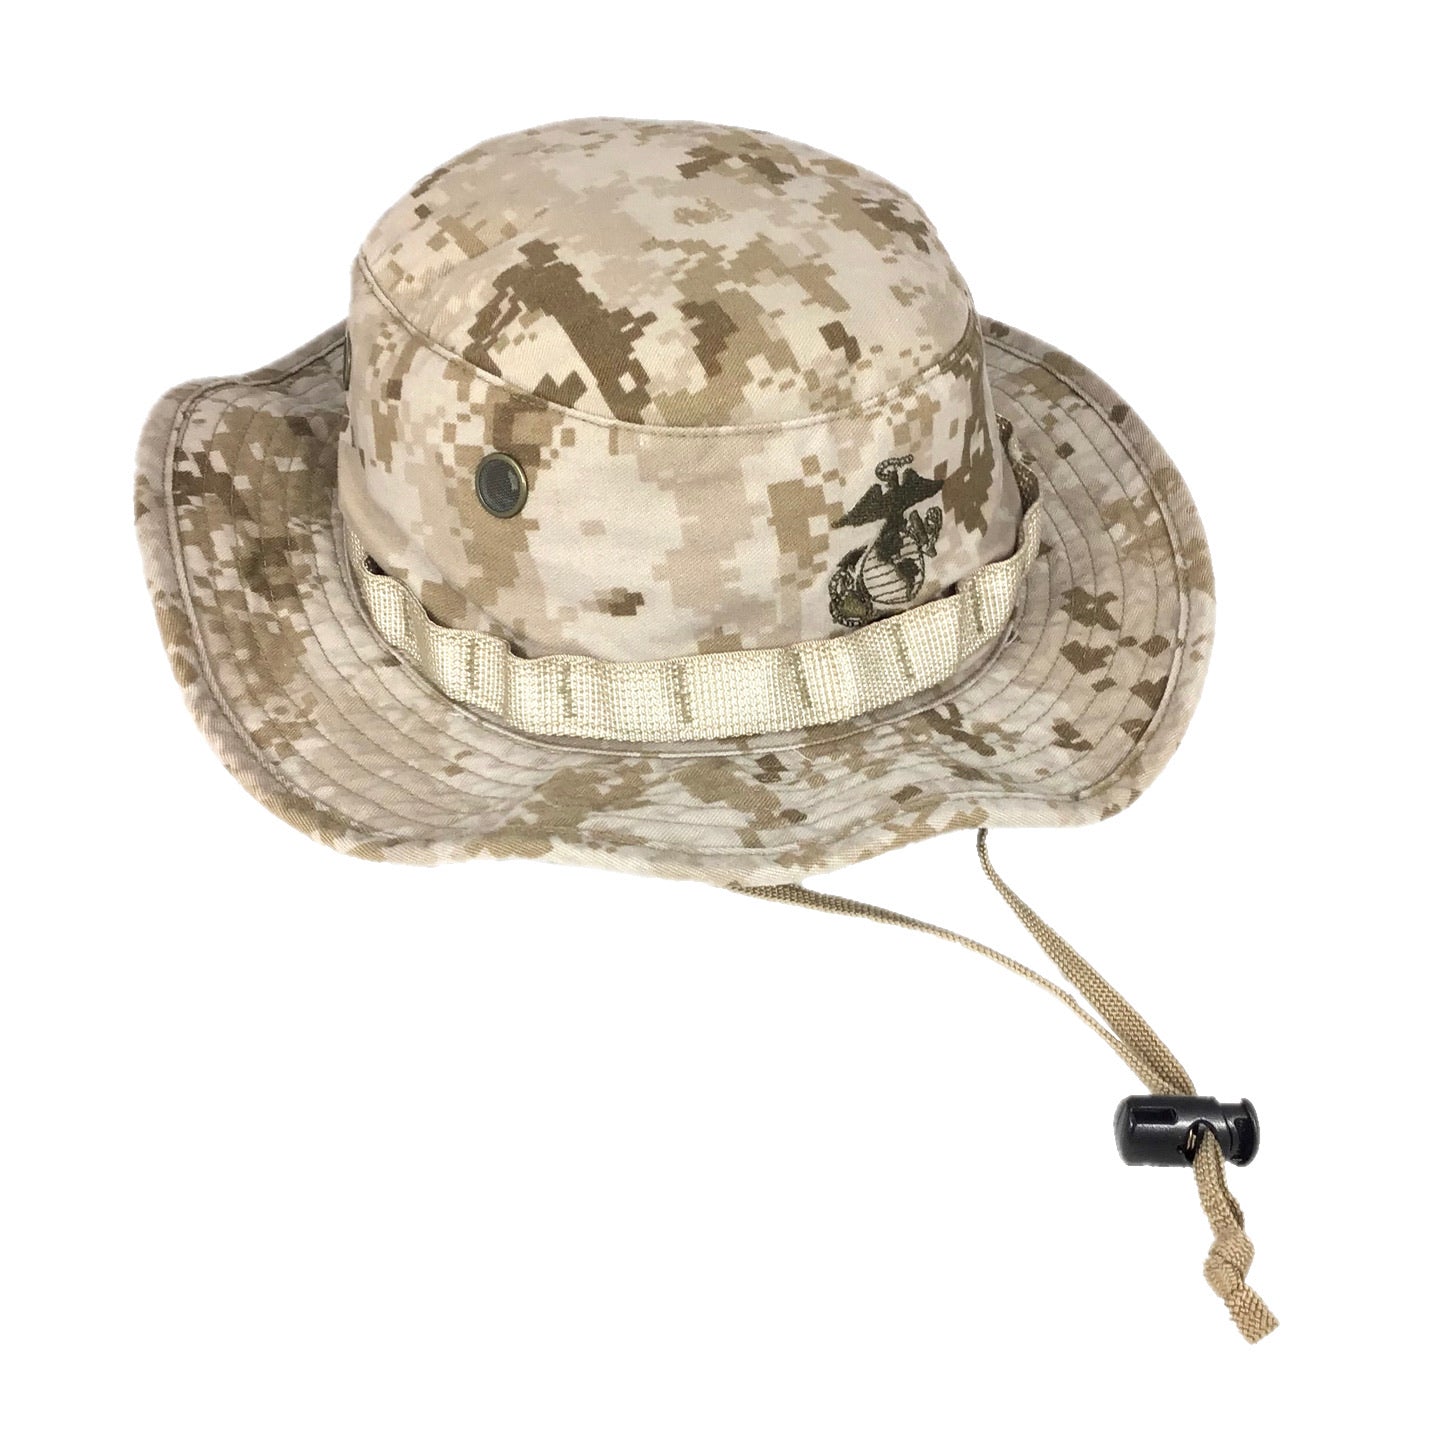 USMC MCCUU Desert MARPAT Camo Boonie Hat Cap Cover with EGA